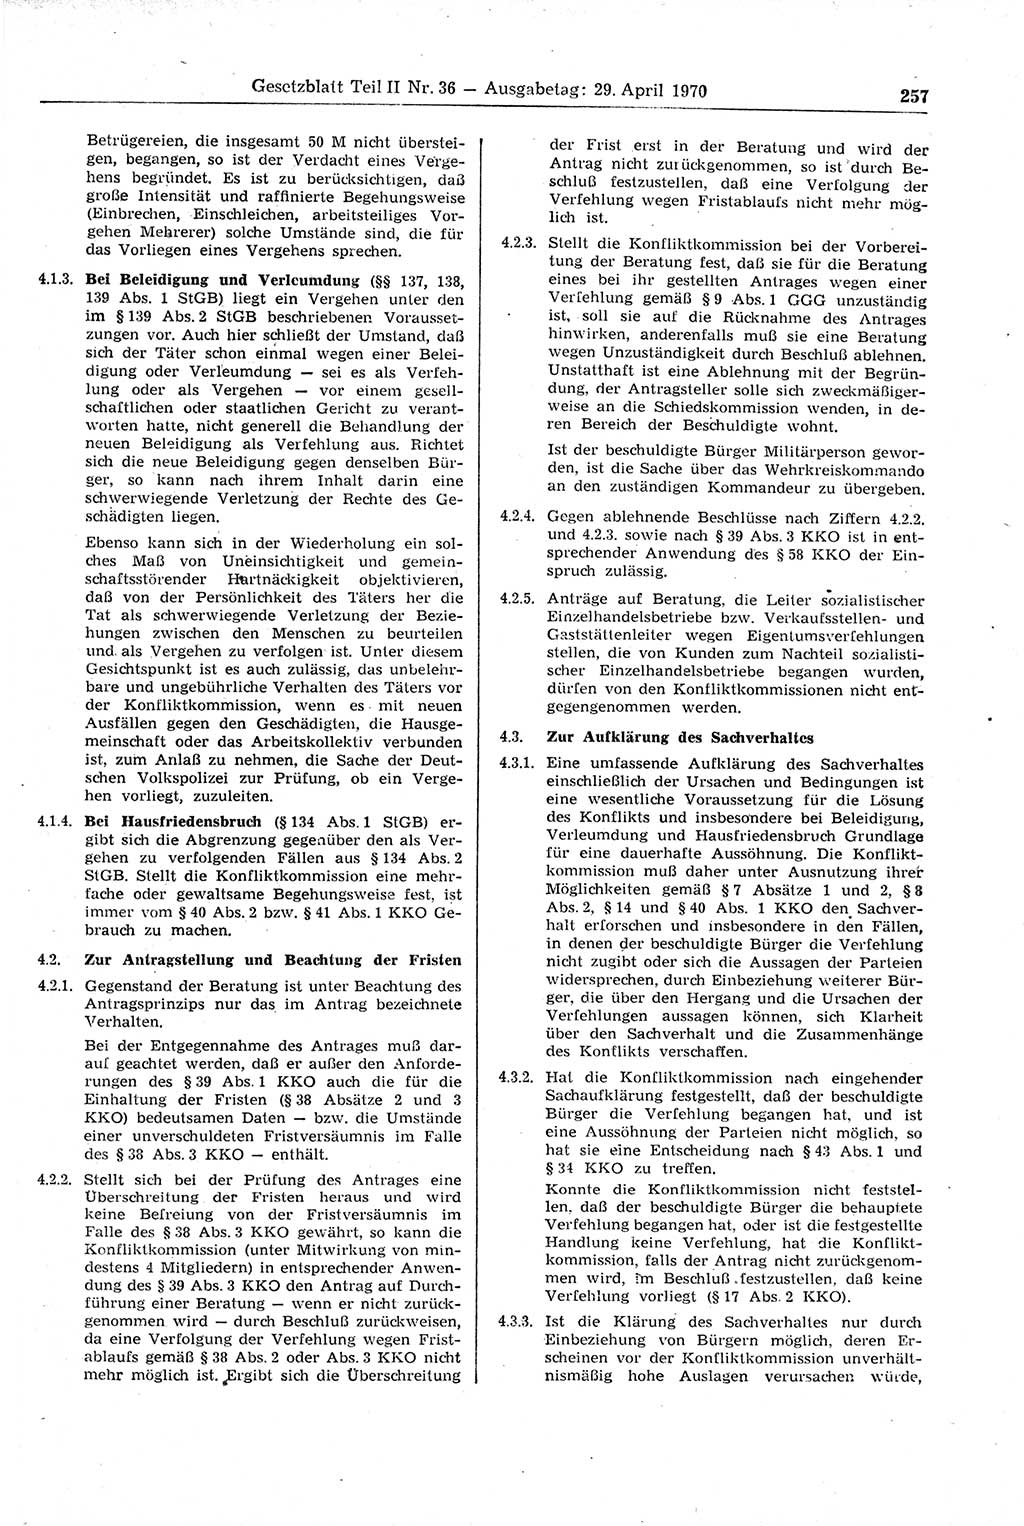 Gesetzblatt (GBl.) der Deutschen Demokratischen Republik (DDR) Teil ⅠⅠ 1970, Seite 257 (GBl. DDR ⅠⅠ 1970, S. 257)